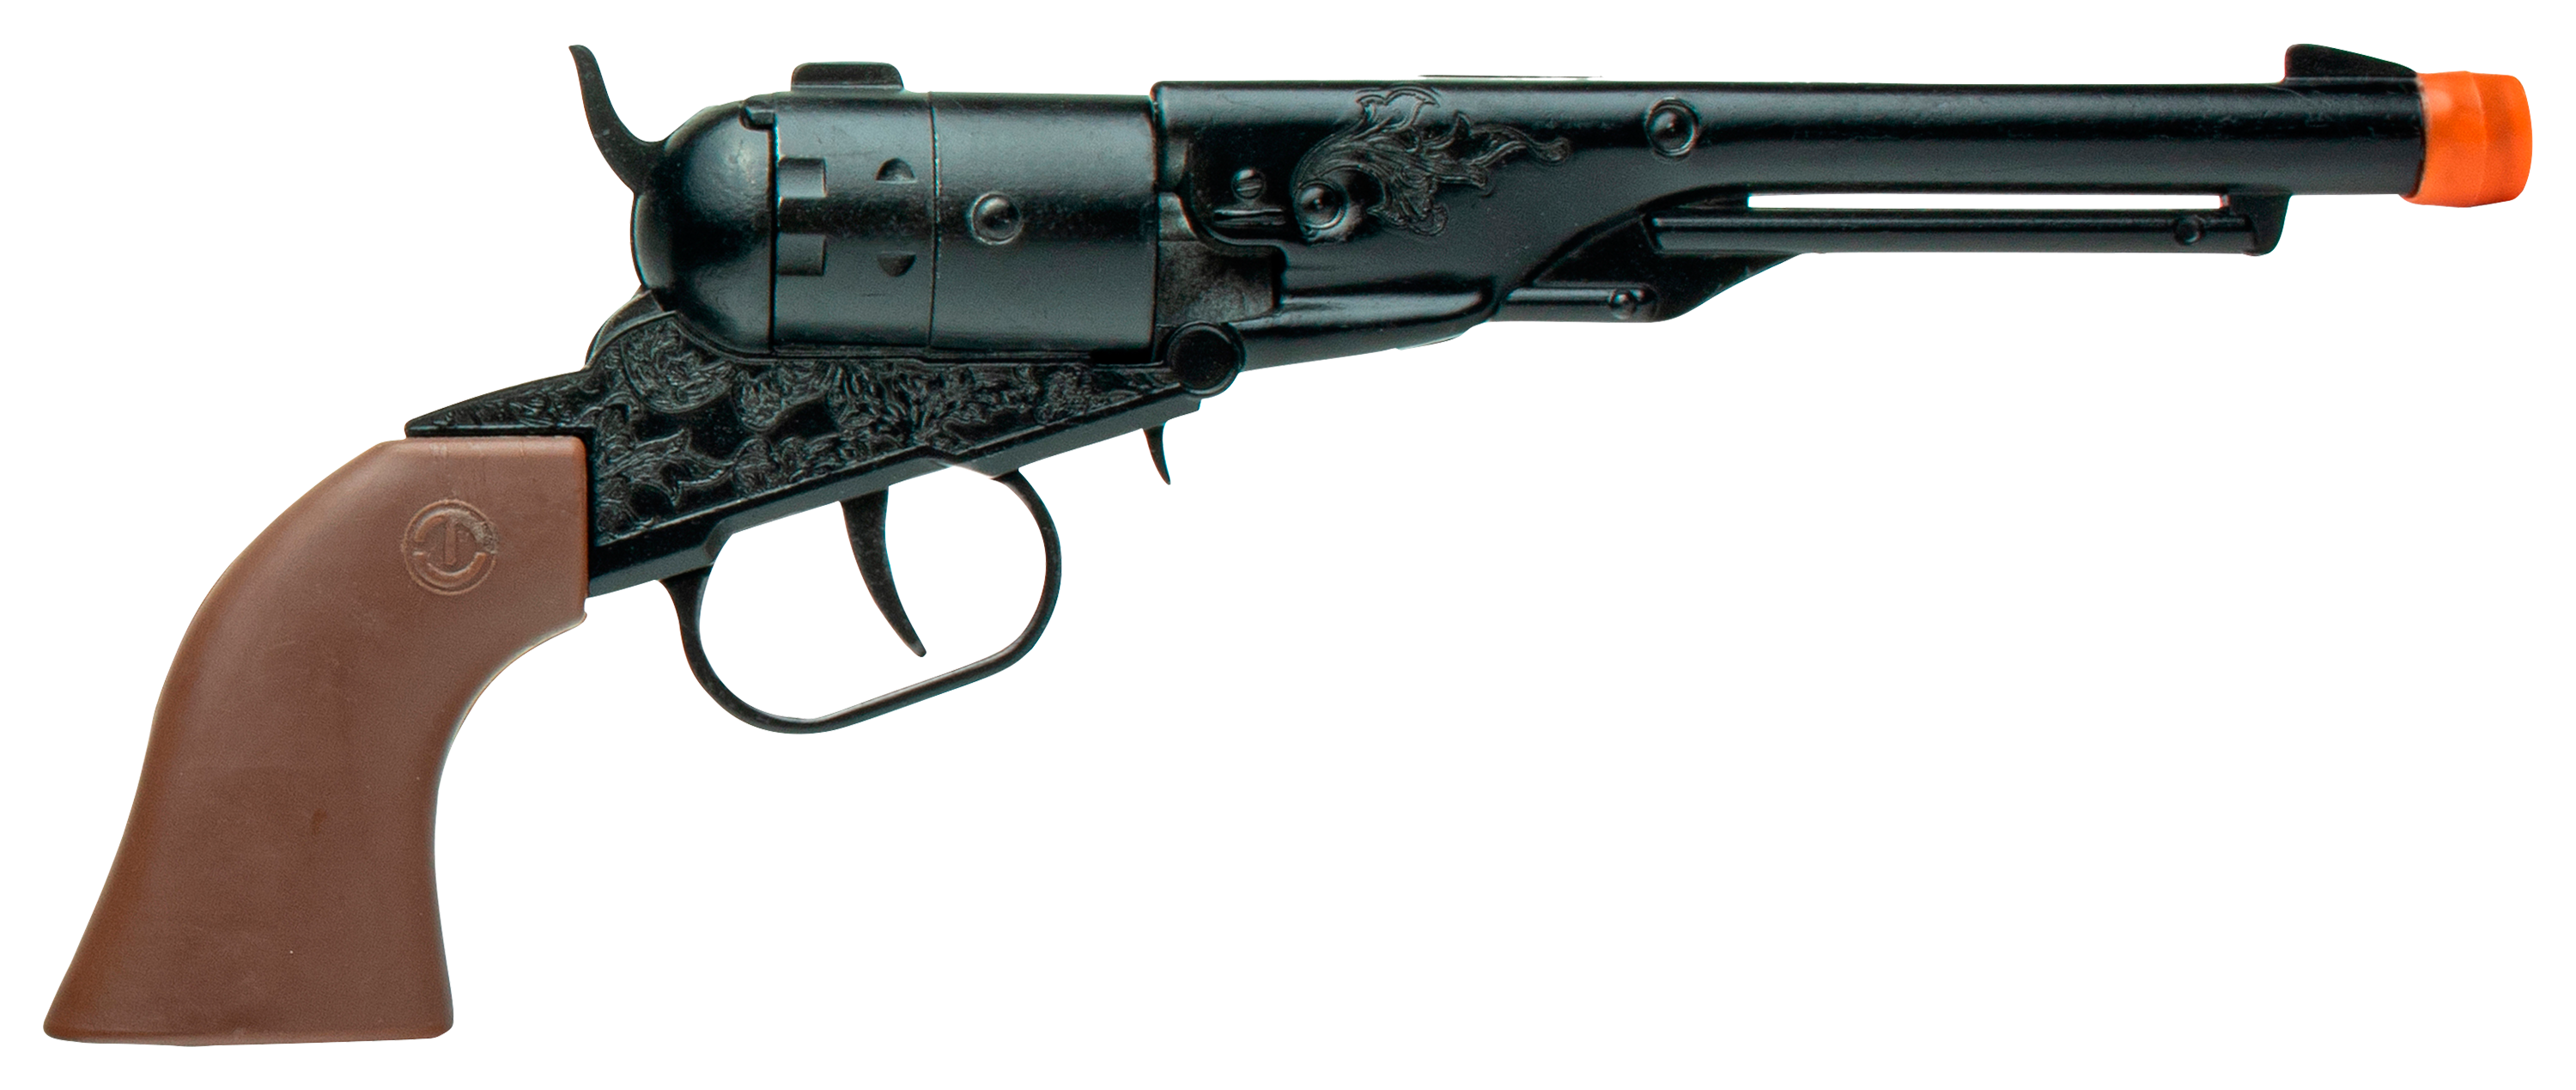 Parris Toys 8-Shot Metal Toy Pistol Cap Gun for Kids